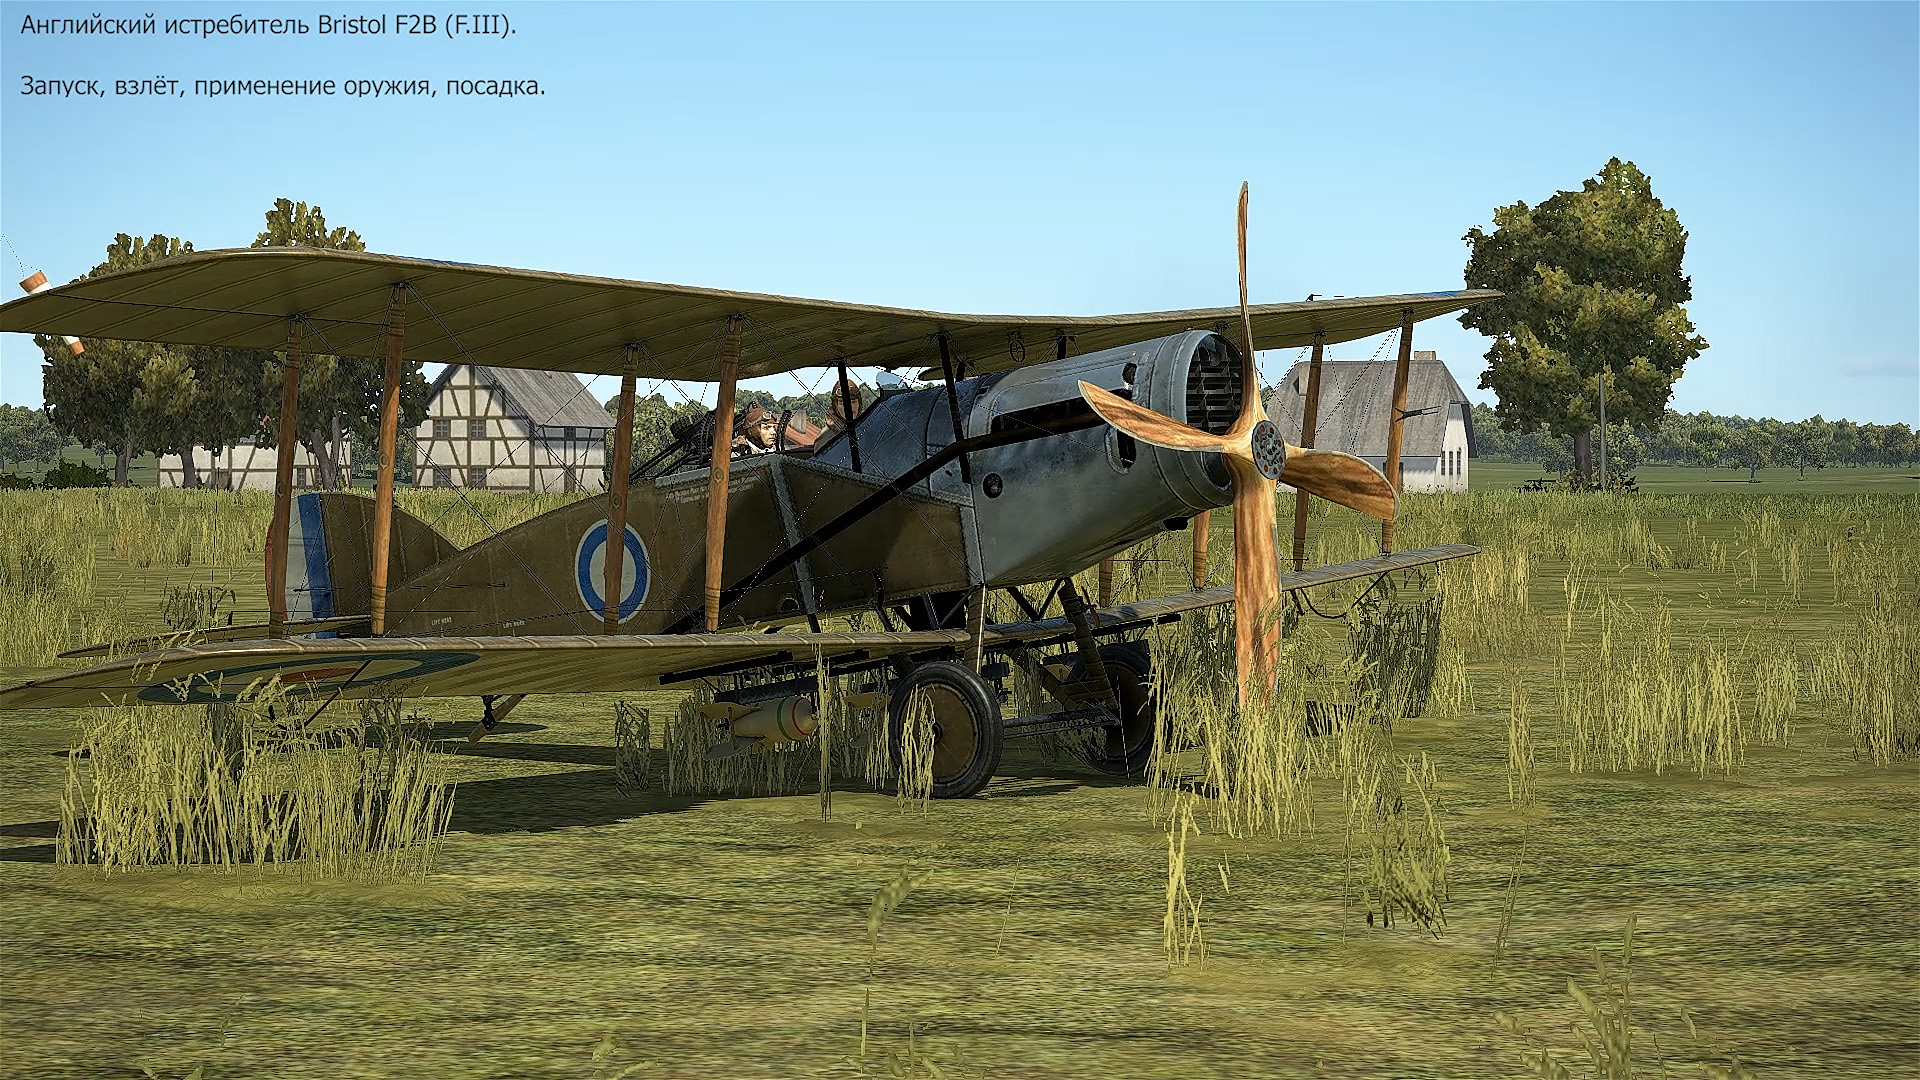 Истребитель Bristol F2B (F.III) (Великобритания). Симулятор Flying Circus.